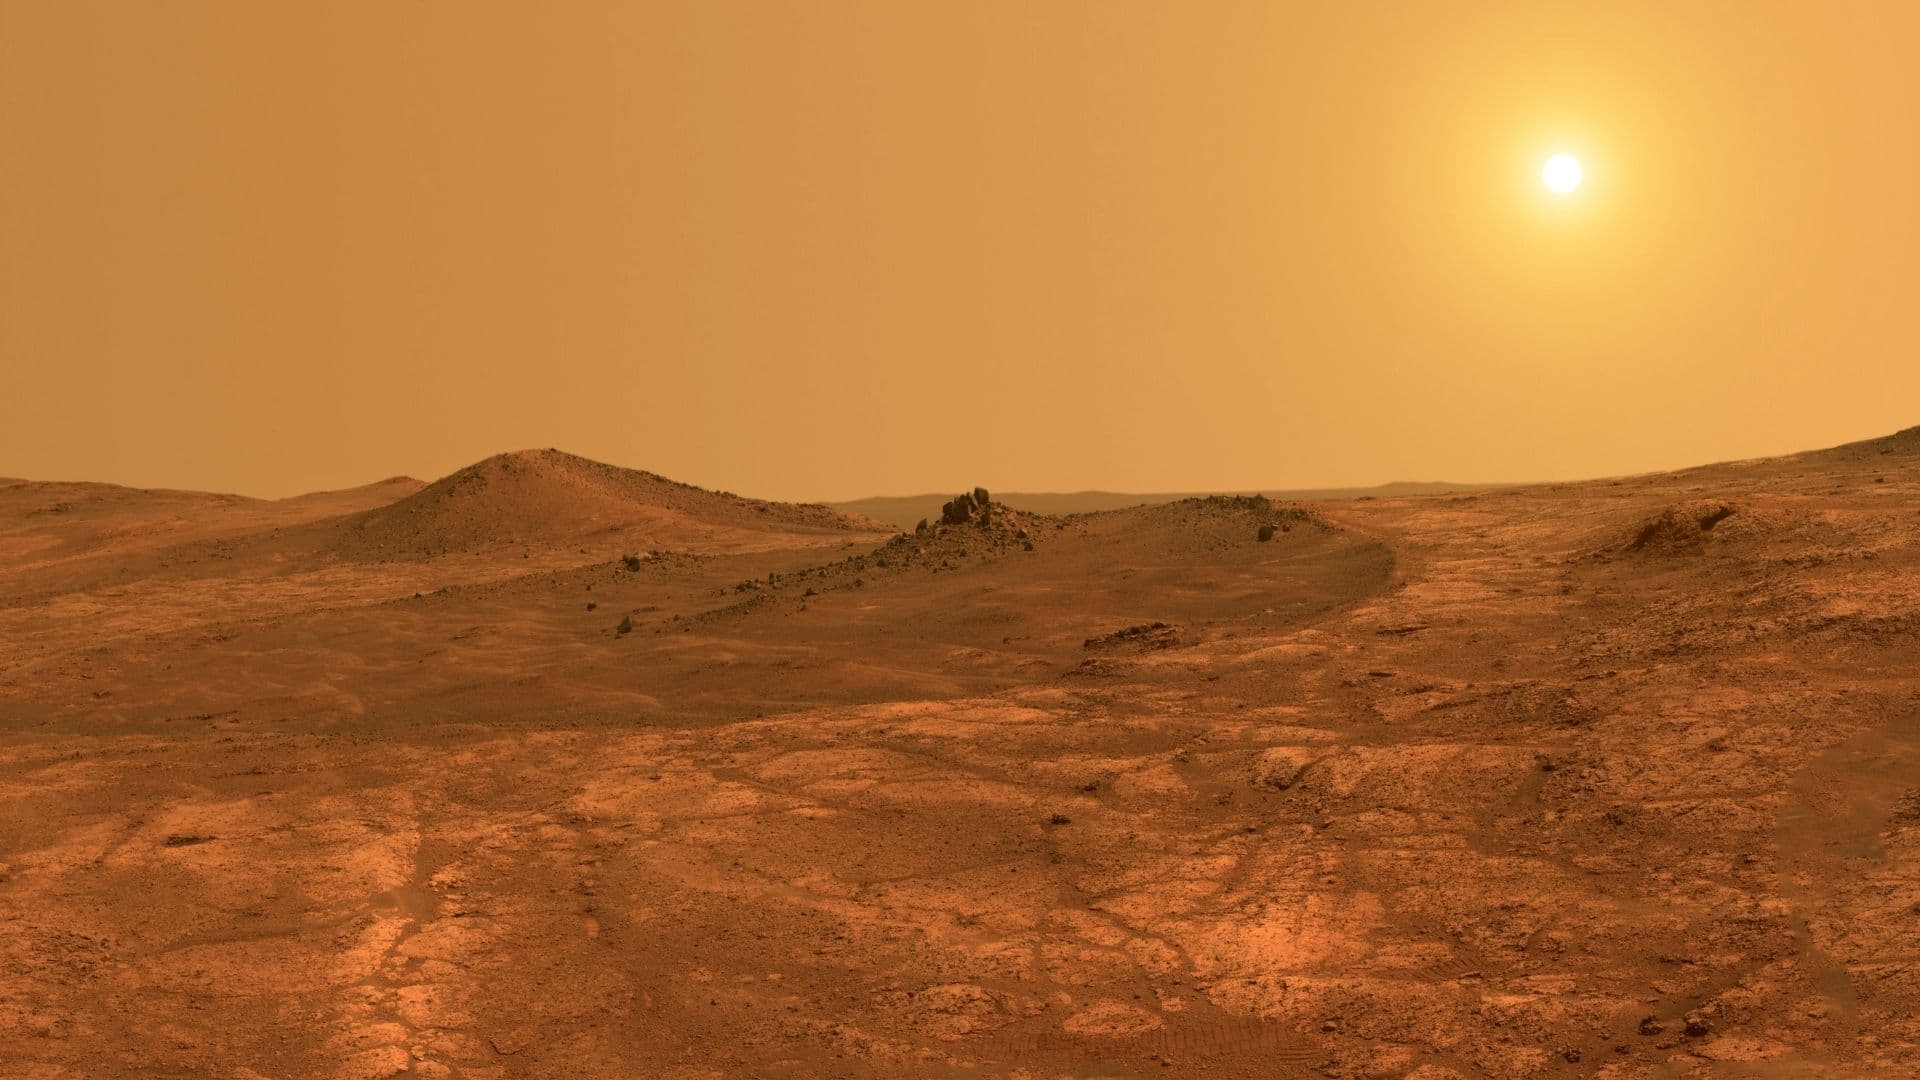 Vulkanische activiteit onder het rotsachtige oppervlak van Mars, de rode planeet